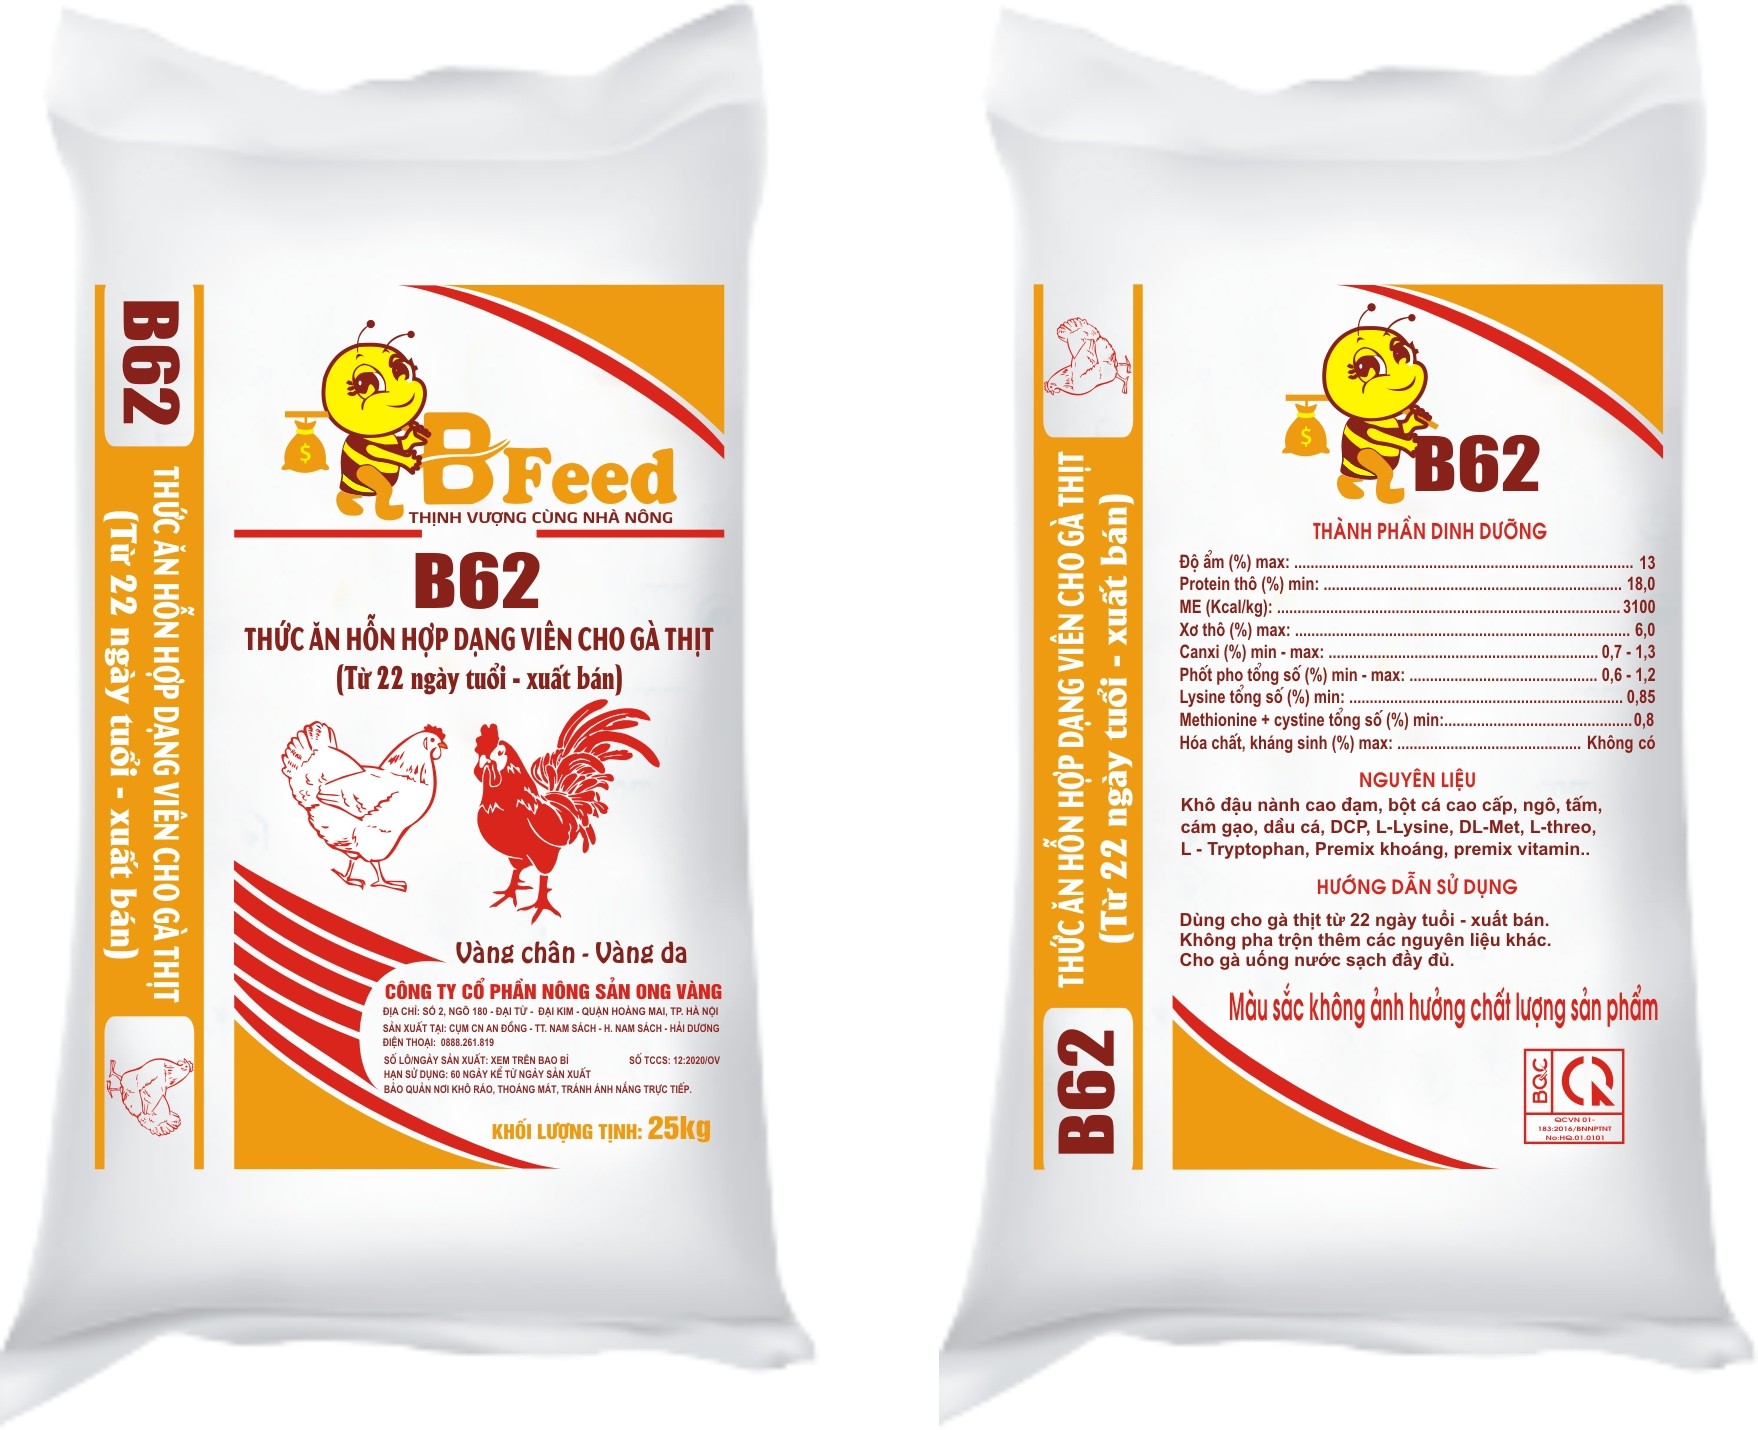 B62 - Thức ăn hỗn hợp dạng viên cho gà thịt (Từ 22 ngày tuổi - xuất bán)